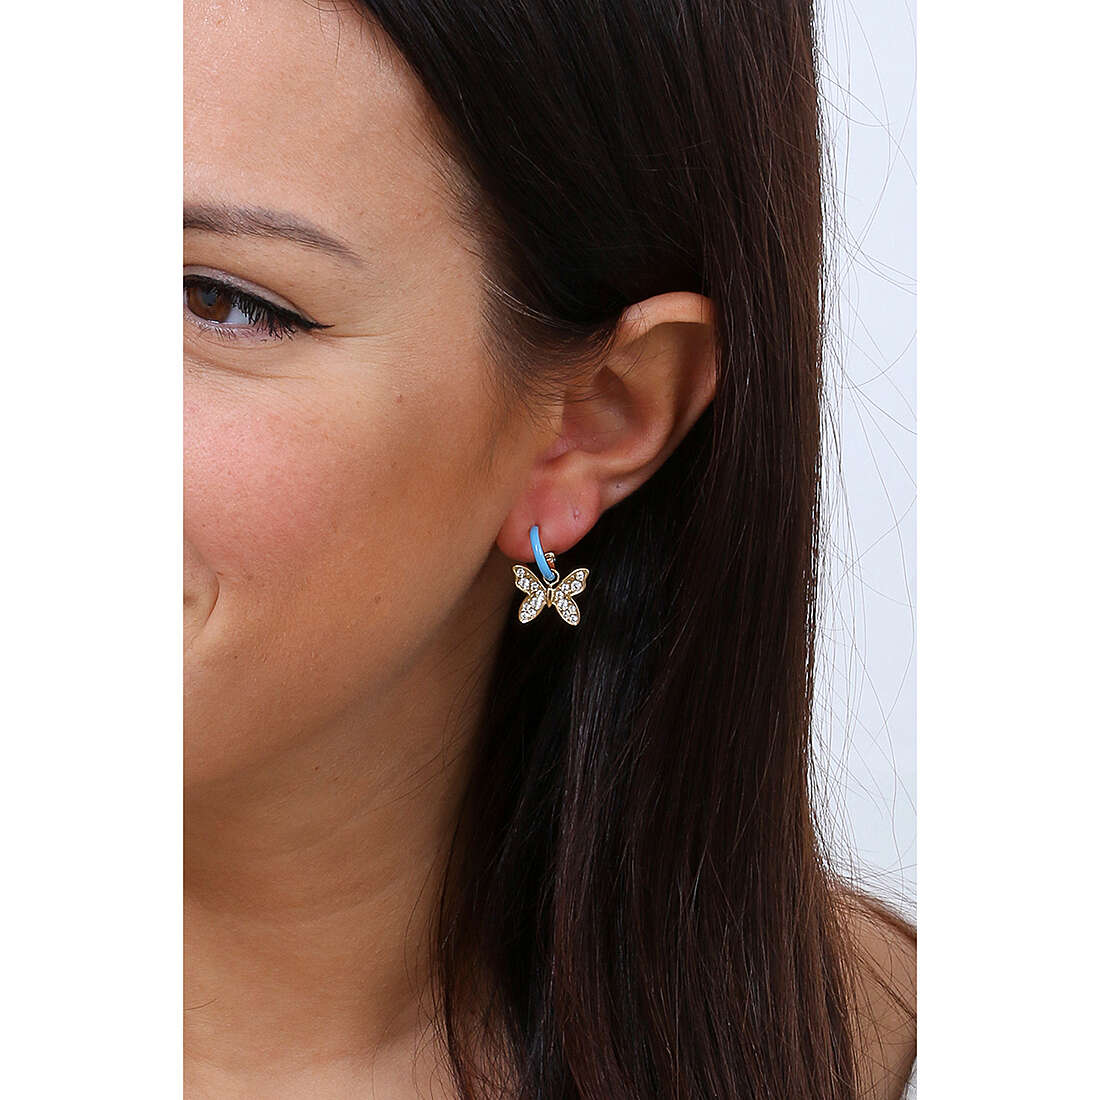 Liujo earrings Teen woman LJ1881 wearing